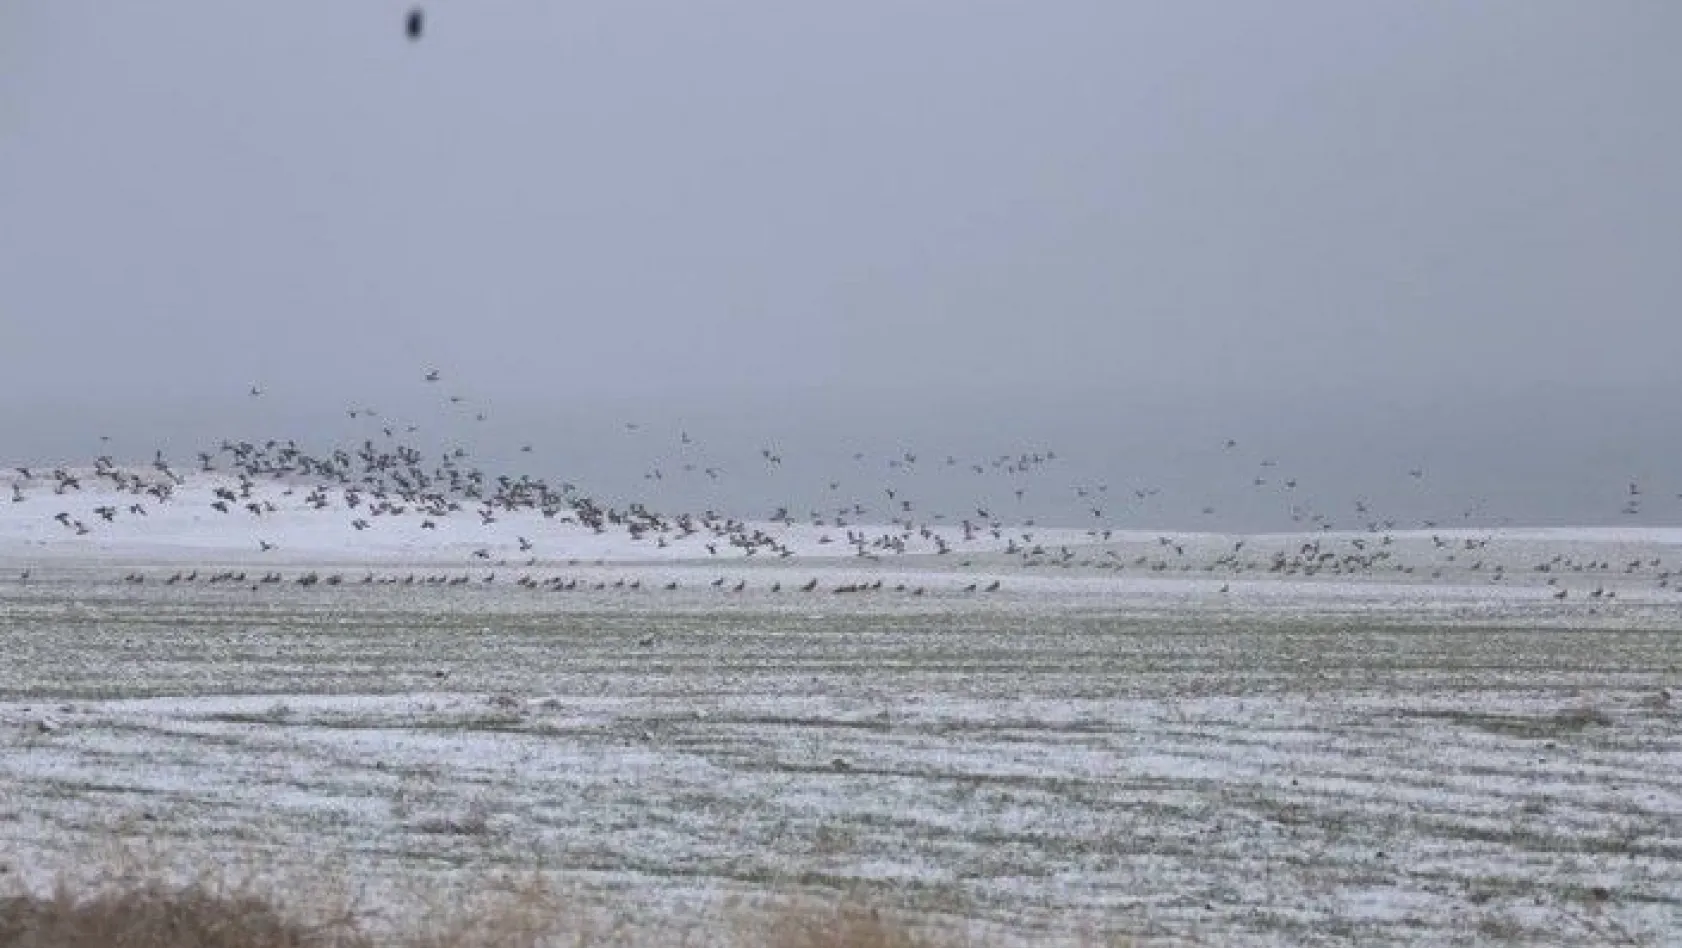 Elazığ'da kış ortası kuş sayımı yapıldı